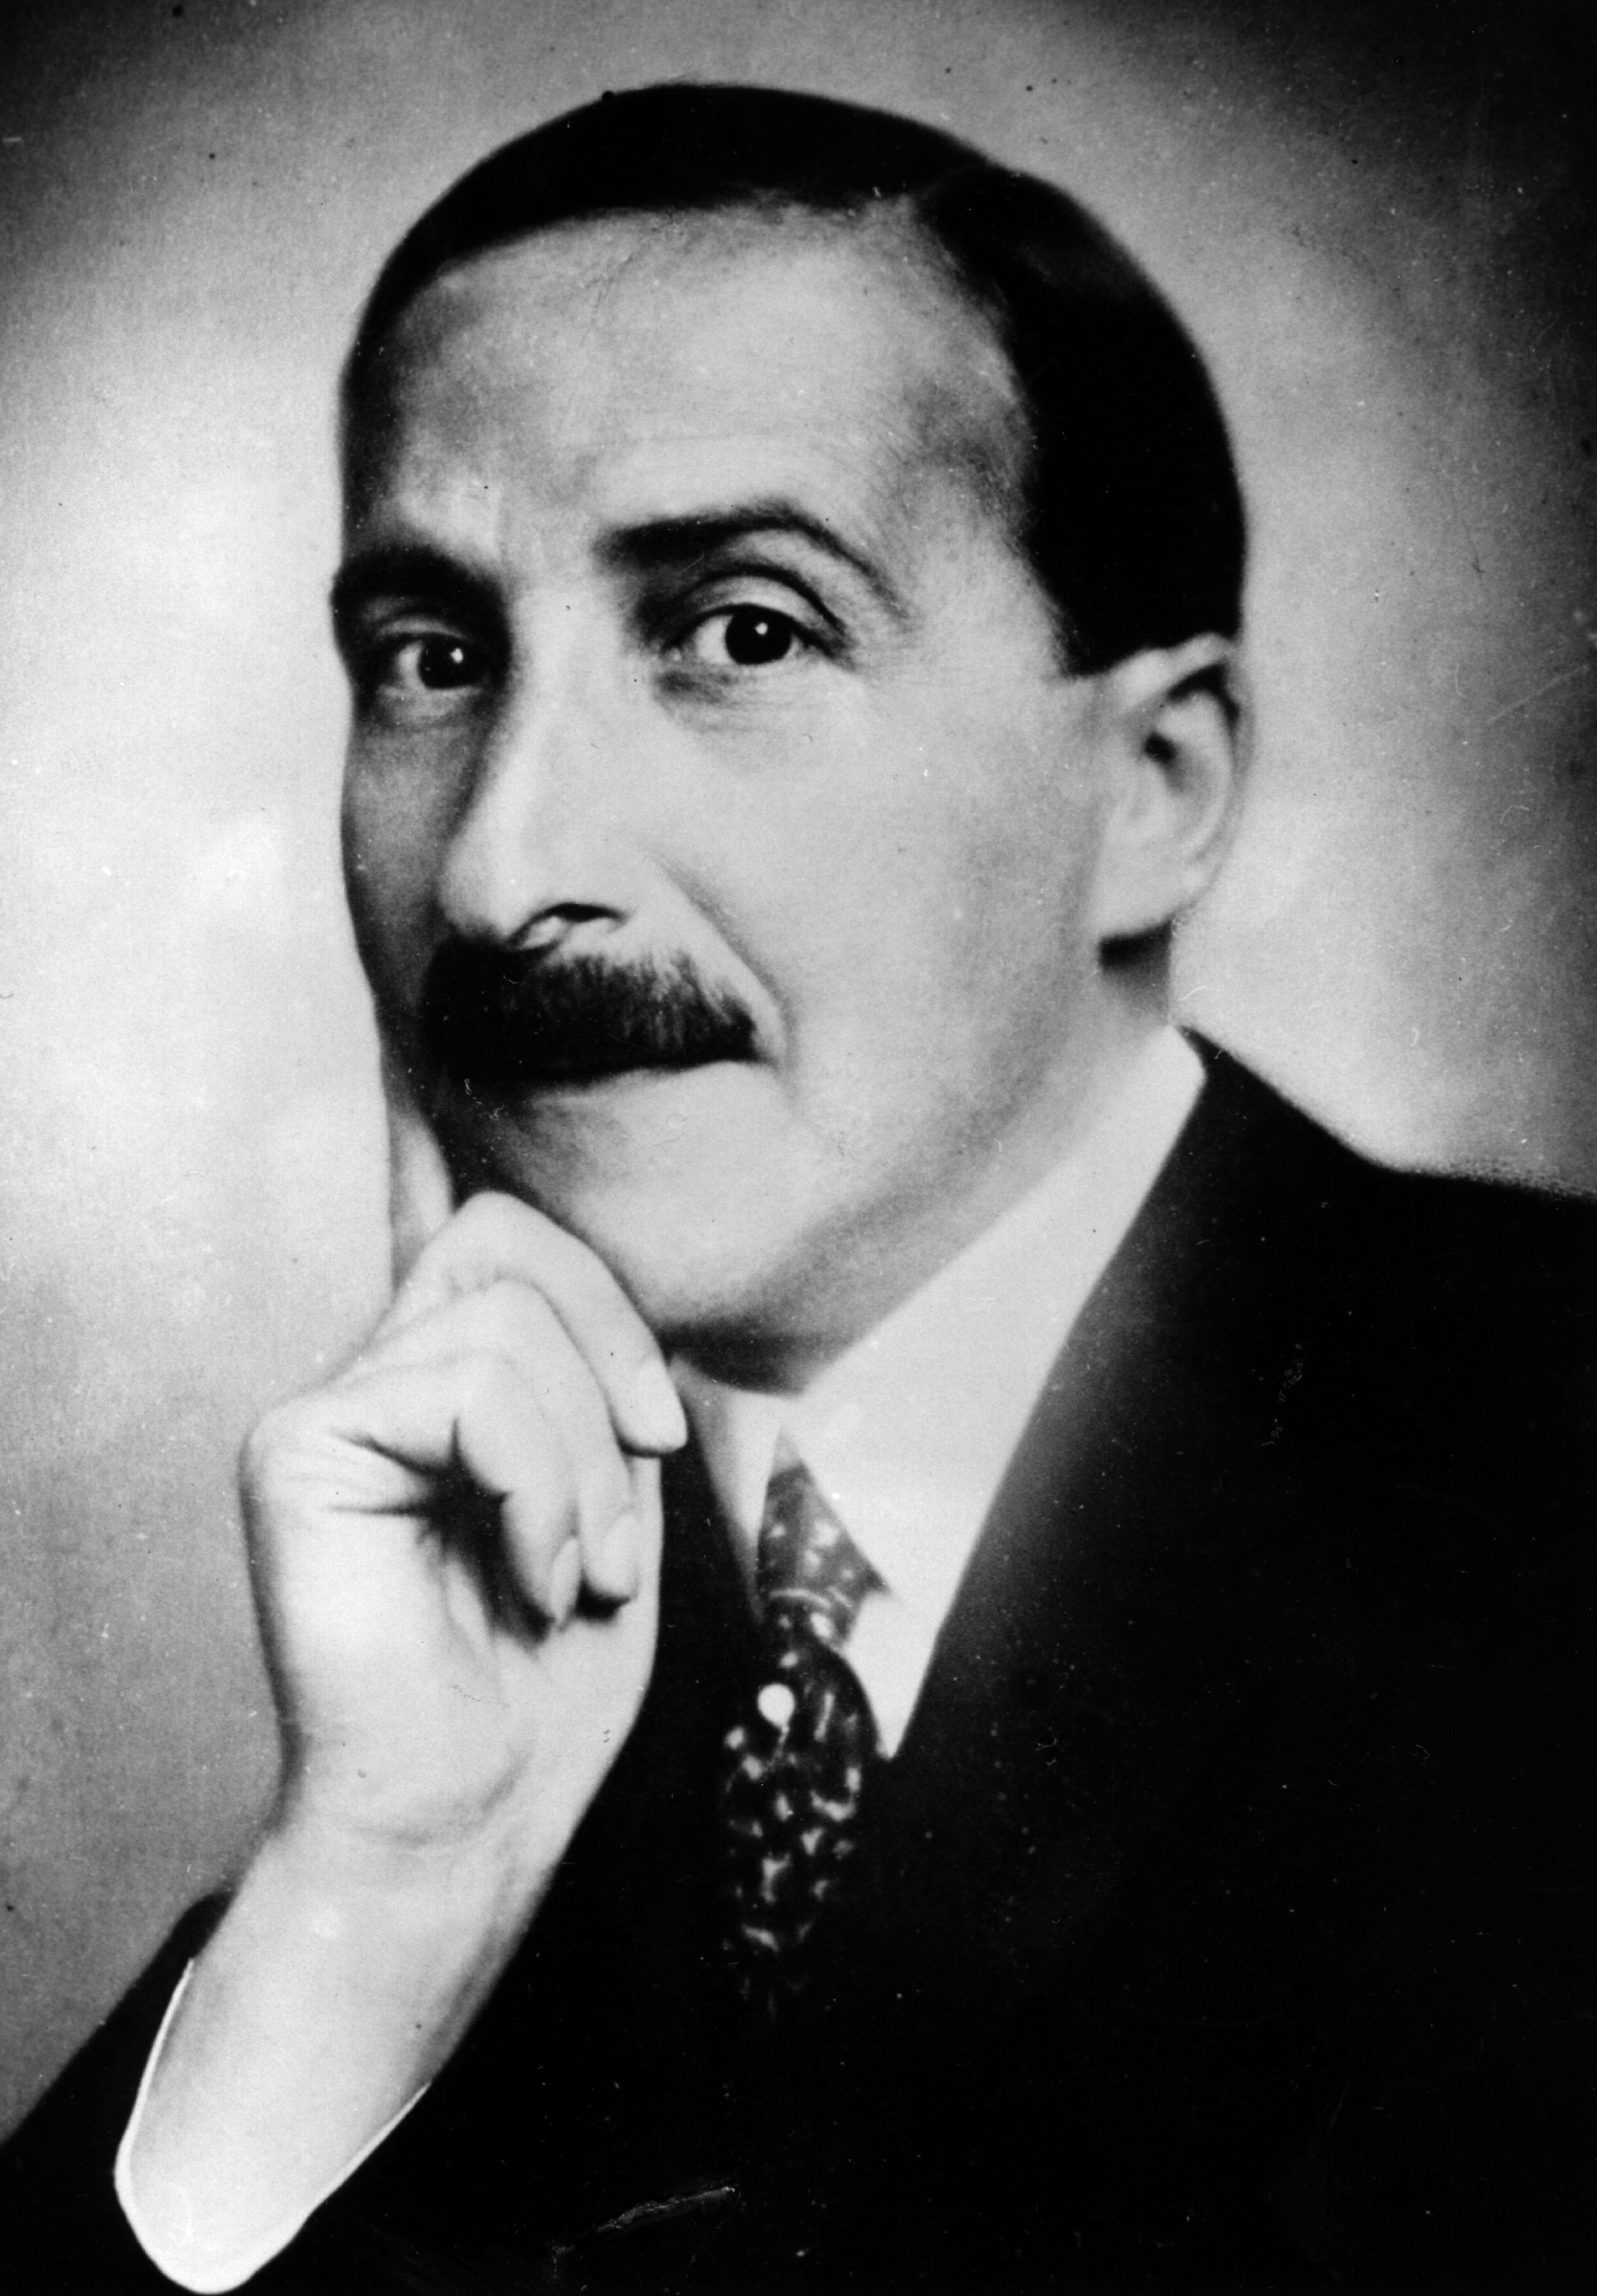 Stefan Zweig.jpg